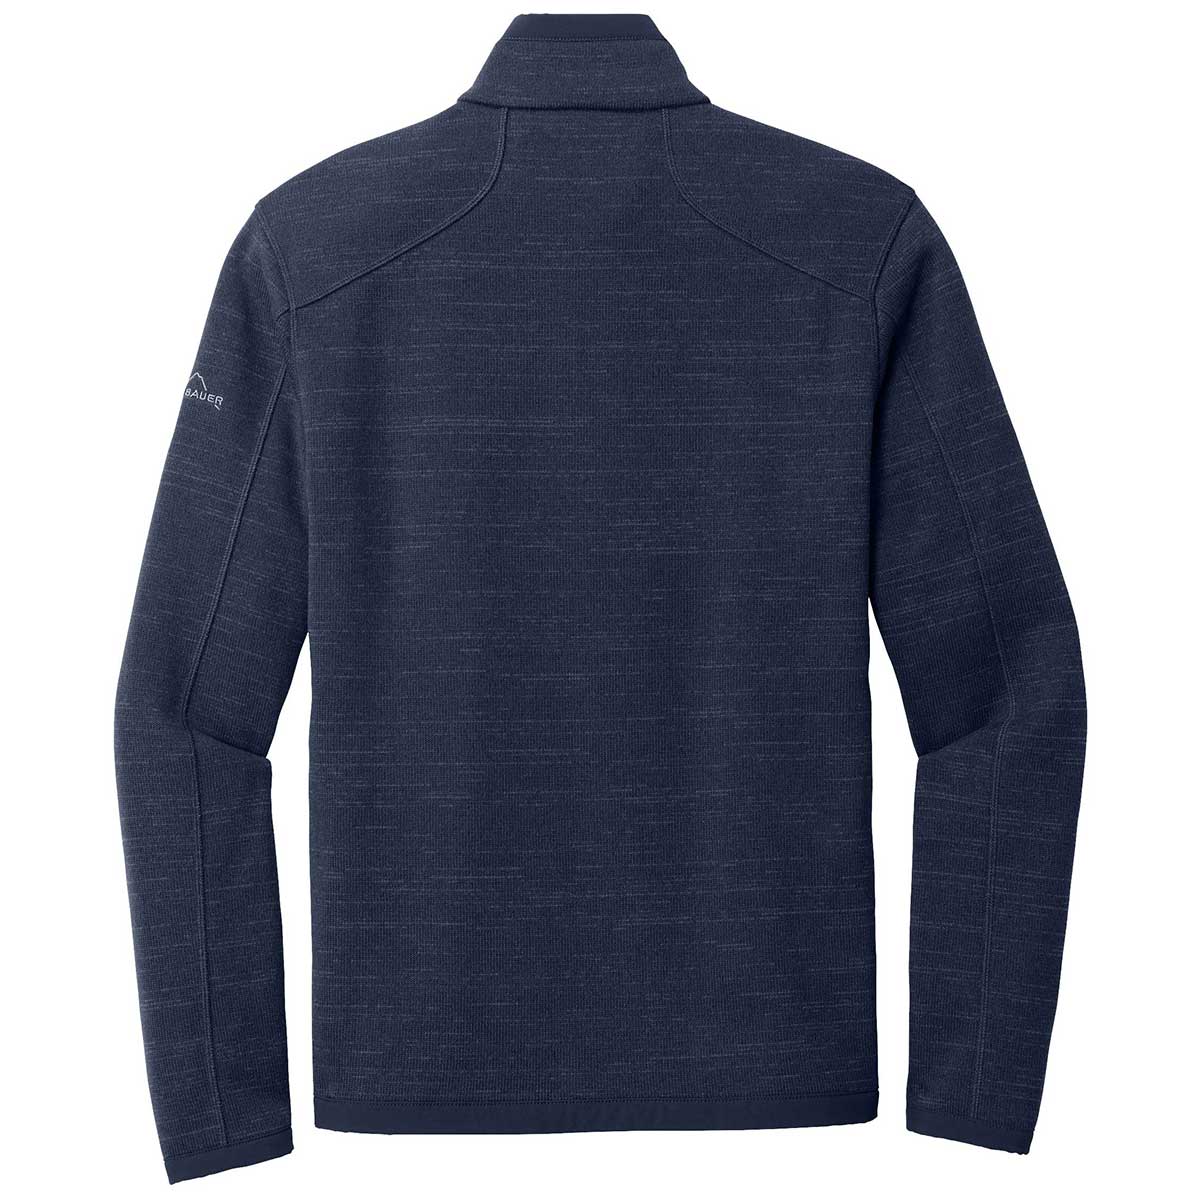 Eddie Bauer Sweater Fleece Full Zip (EB250) - AMSSM